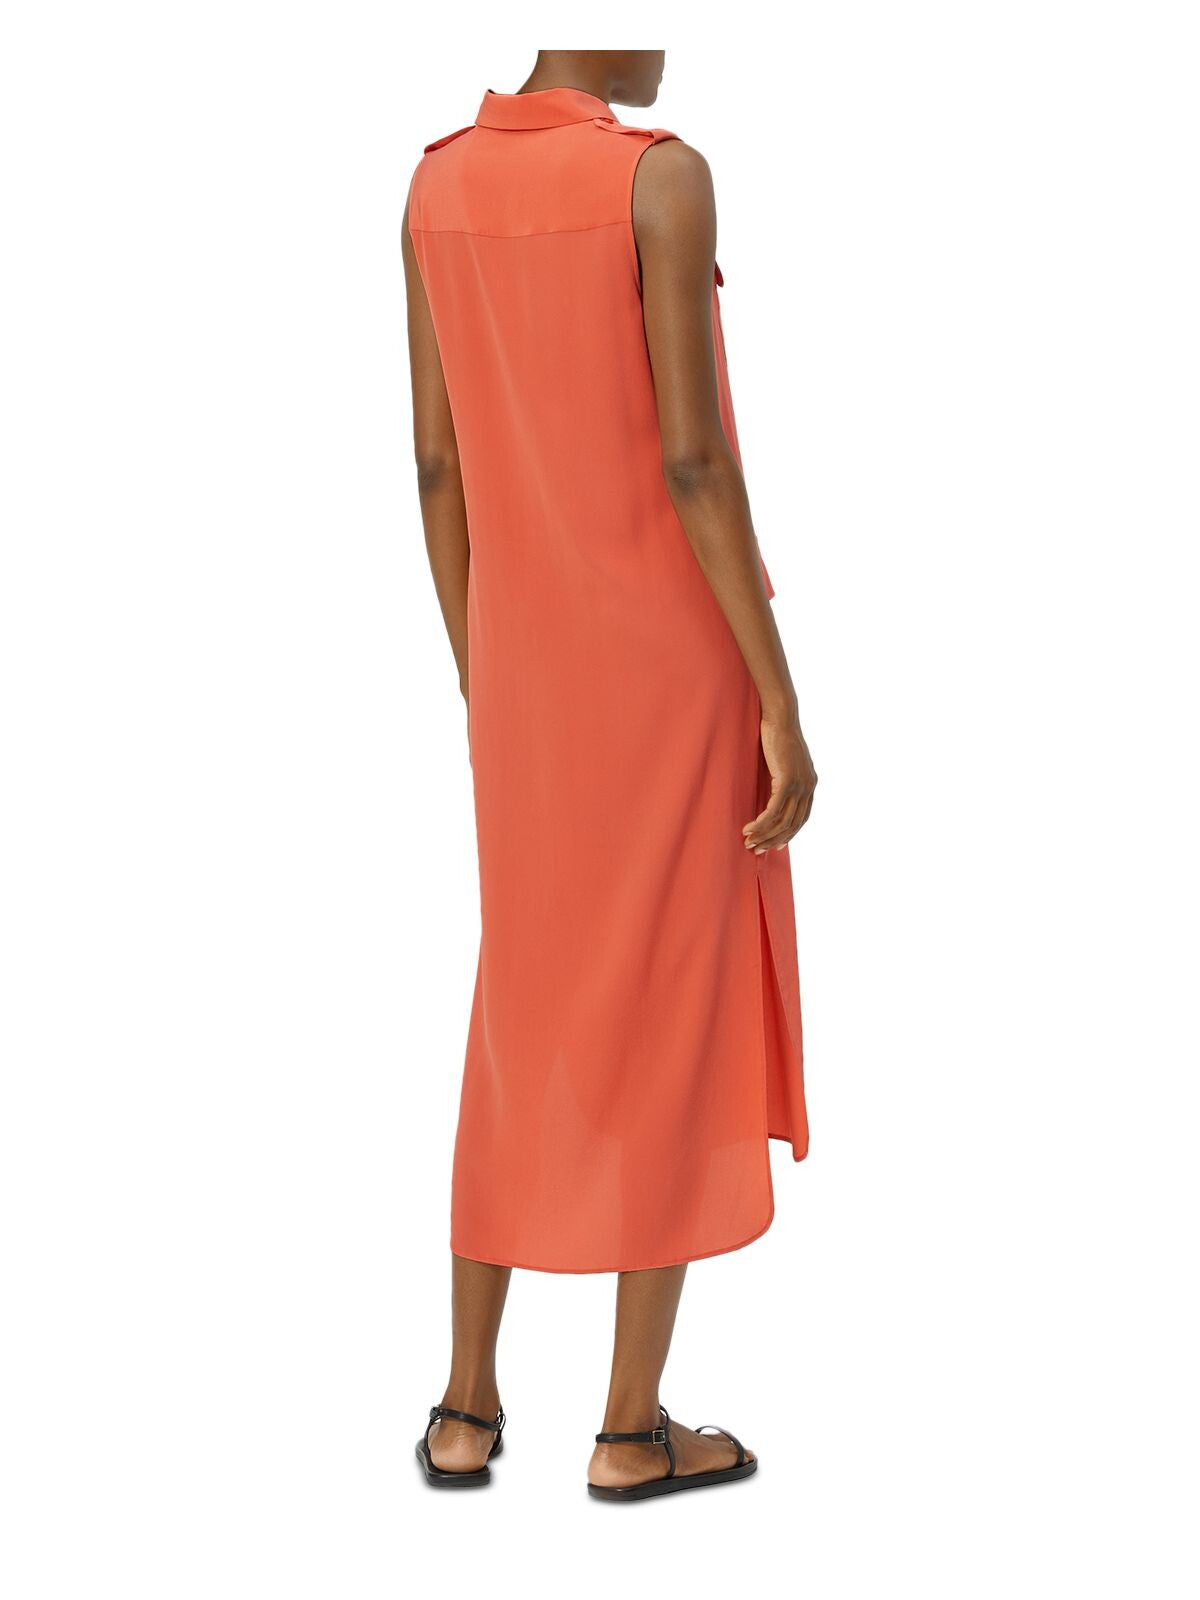 EQUIPMENT FEMME Womens Orange Pocketed Slitted Shoulder Epaulettes Step Hem Short Sleeve Collared Tea-Length Shirt Dress XS